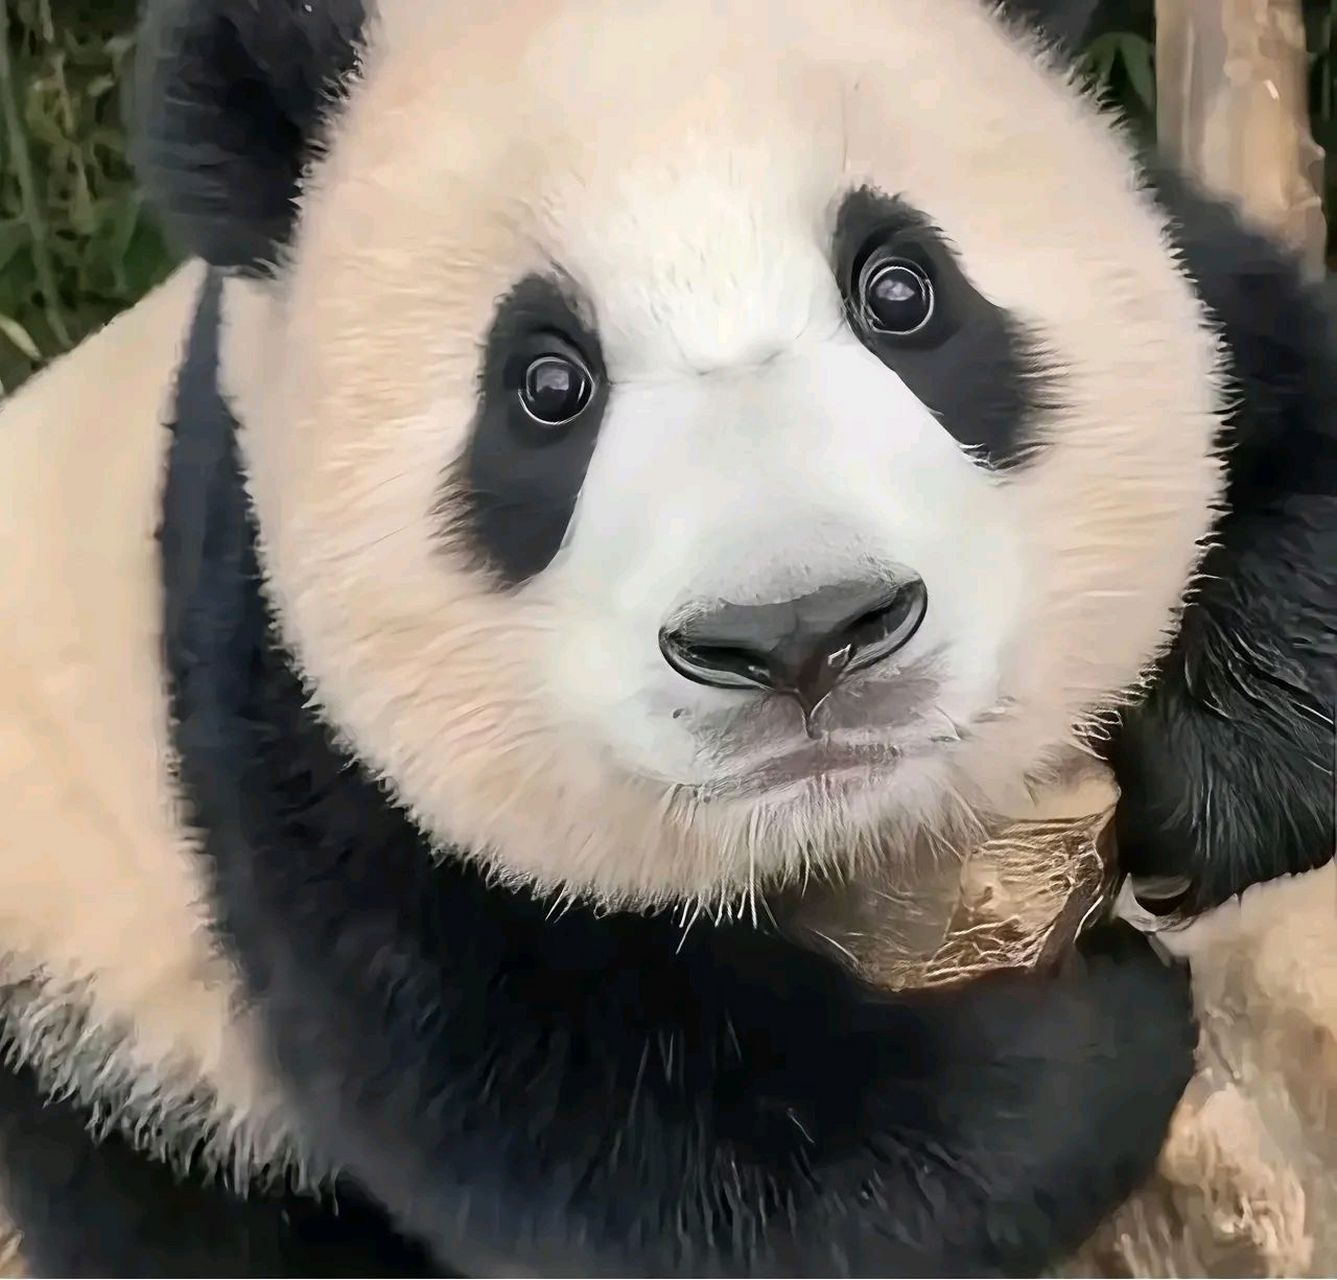 姜爷爷说,福宝是世界上睁眼最早的熊猫,一只眼睛15天就睁开了,一只